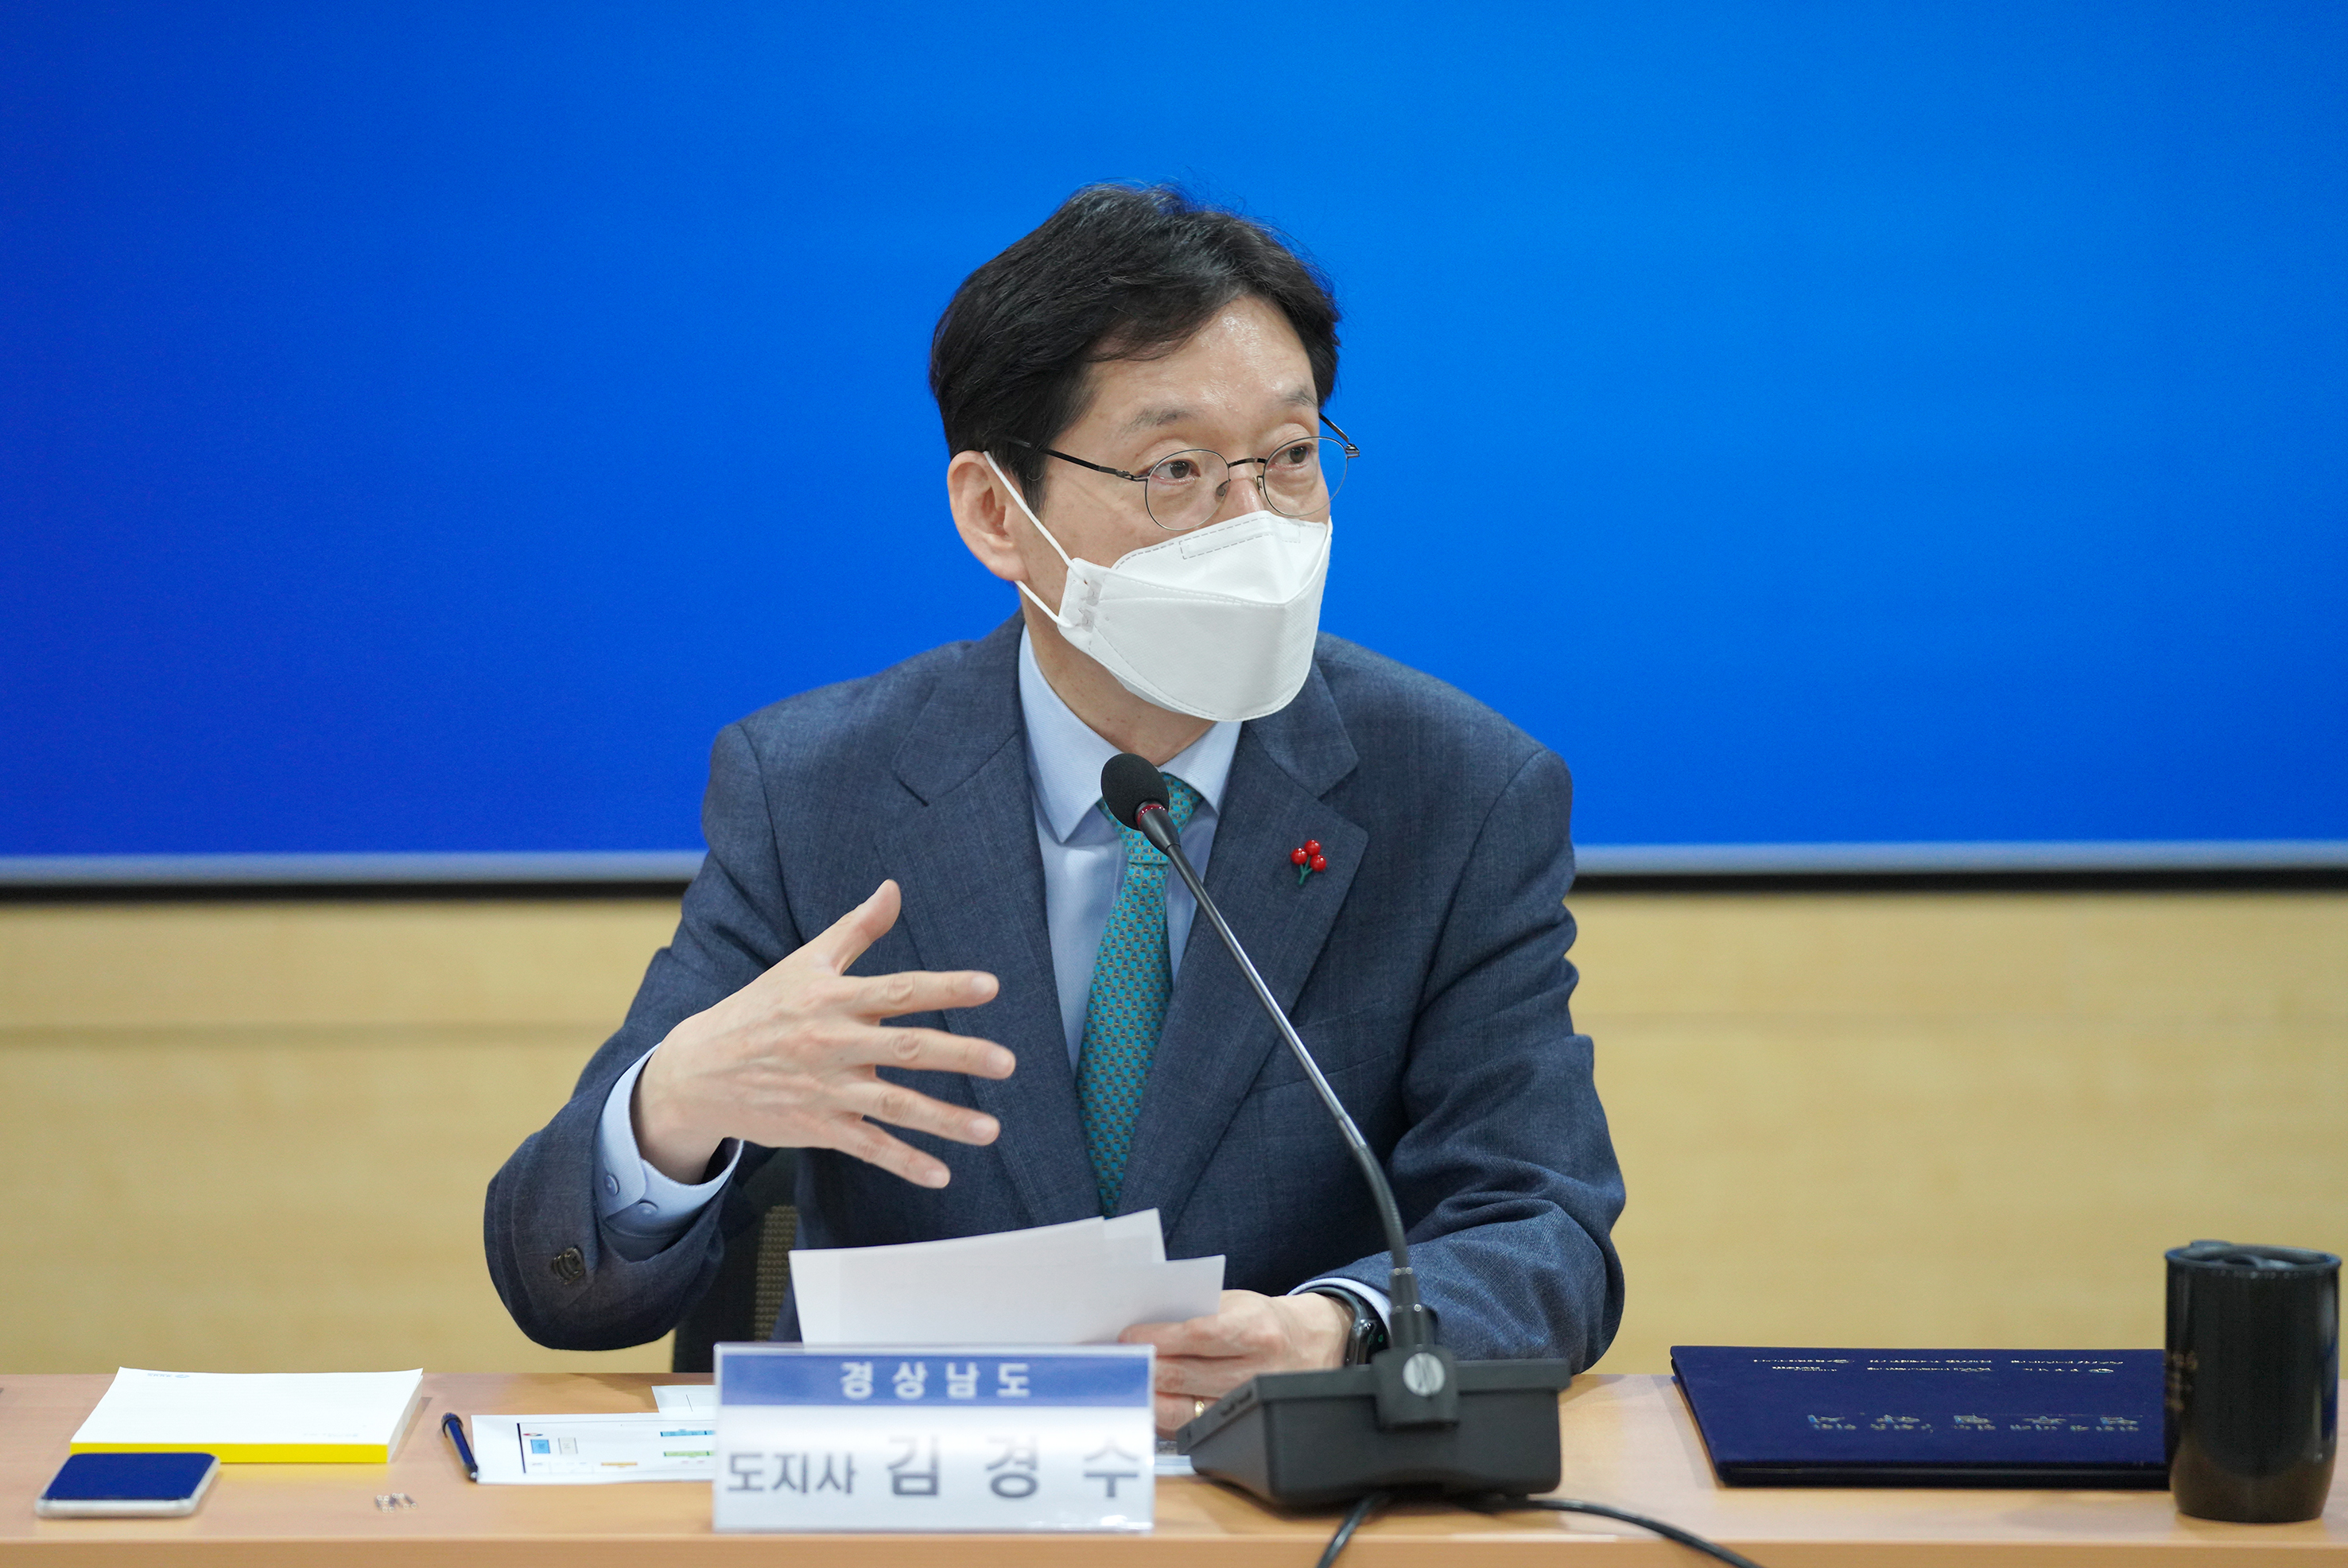 친환경미래철도구현을위한업무협약식-5.jpg